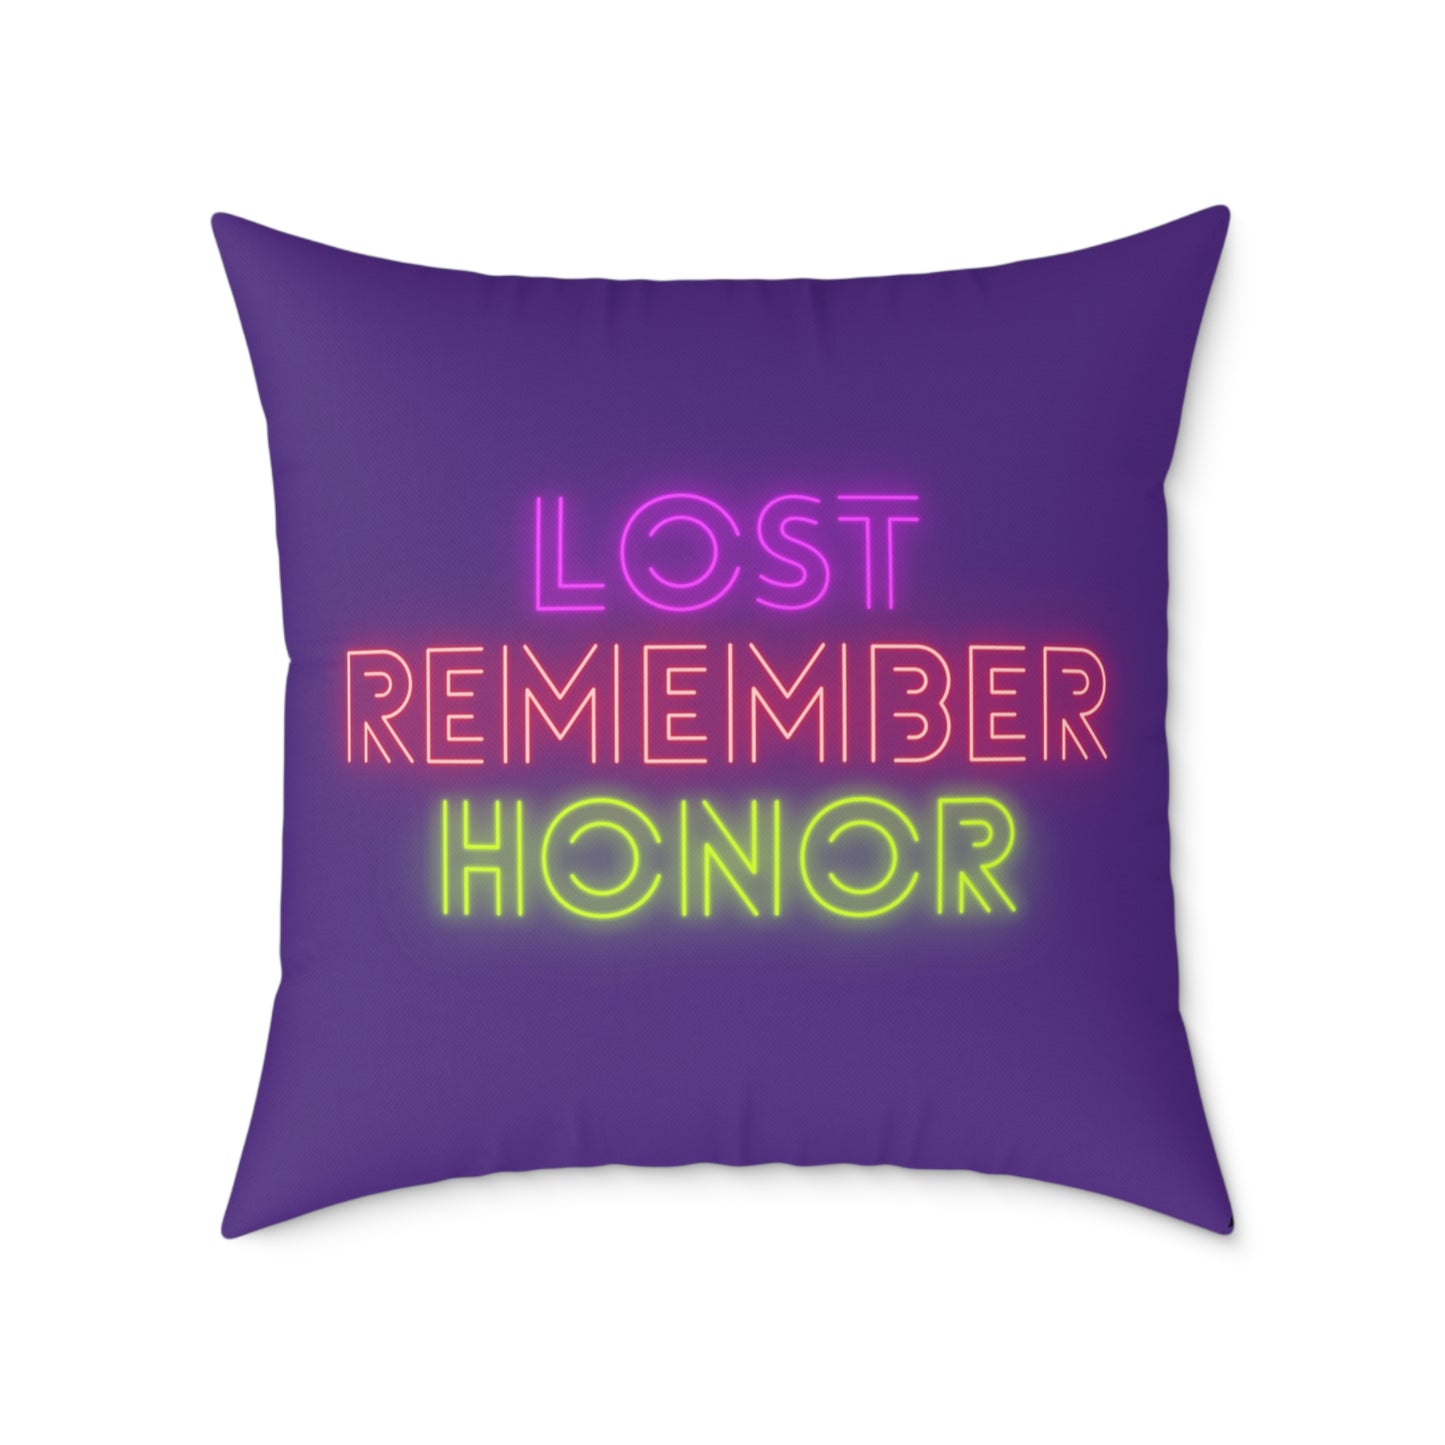 Spun Polyester Pillow: Dragons Purple